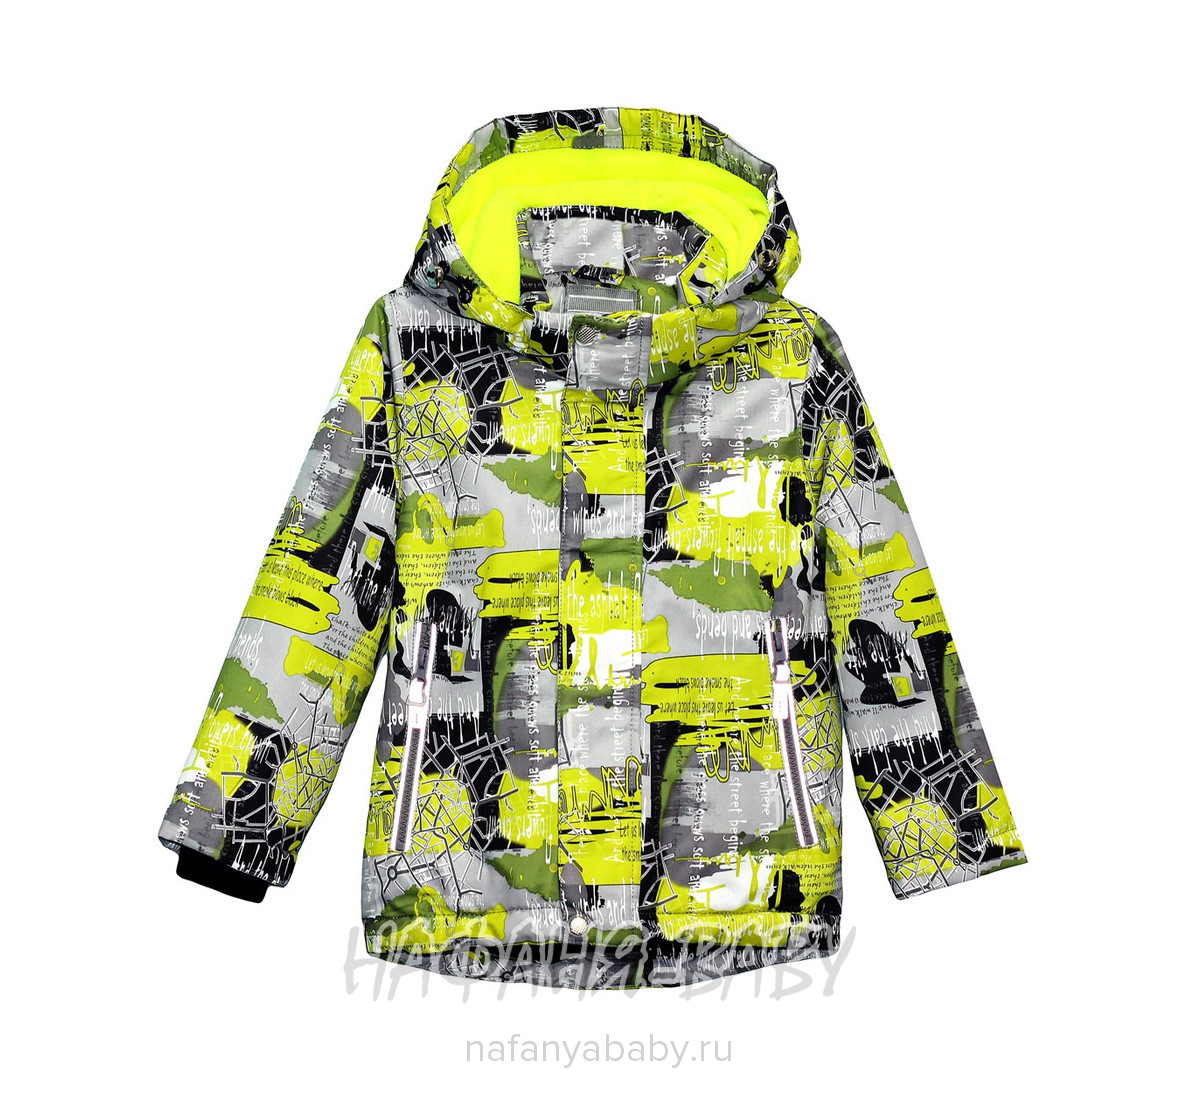 Детская демисезонная куртка TAILANG арт: 1839, 1-4 года, 5-9 лет, цвет желтый, оптом Китай (Пекин)